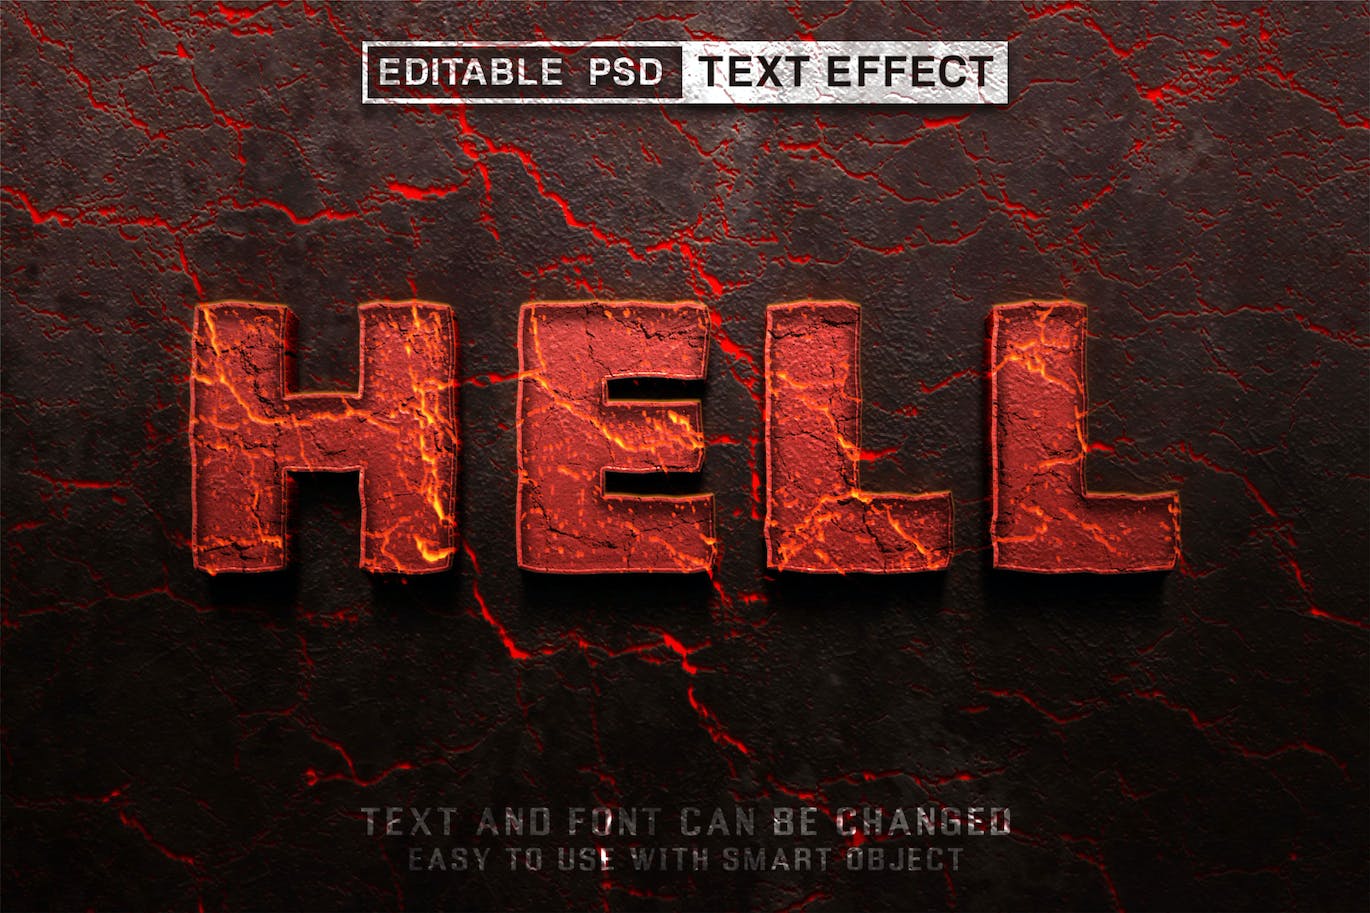 地狱可编辑PS图层样式游戏字体样式 (PSD)